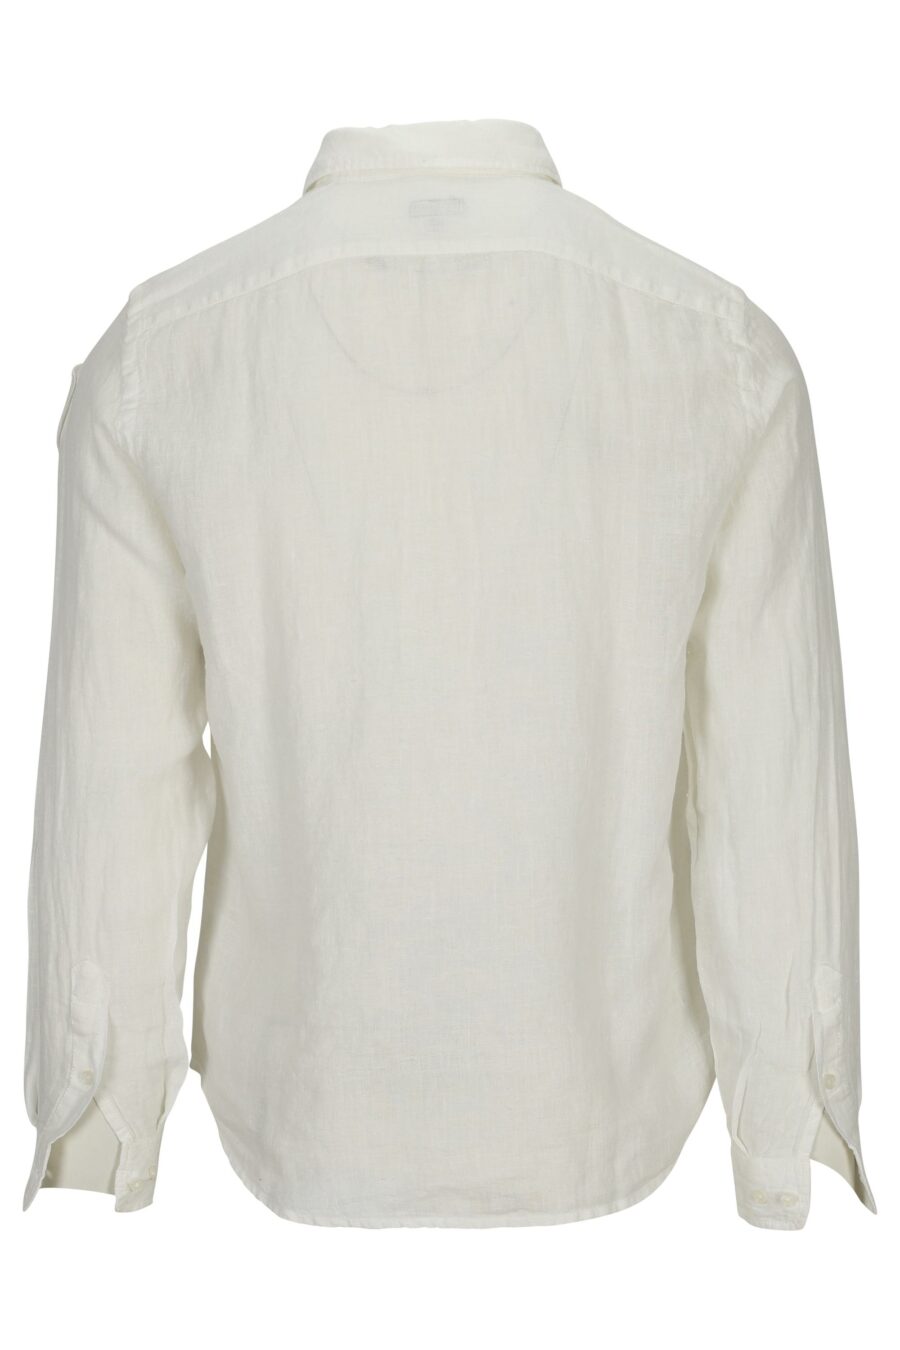 Camisa branca com escudo com mini logótipo - 8058610776718 1